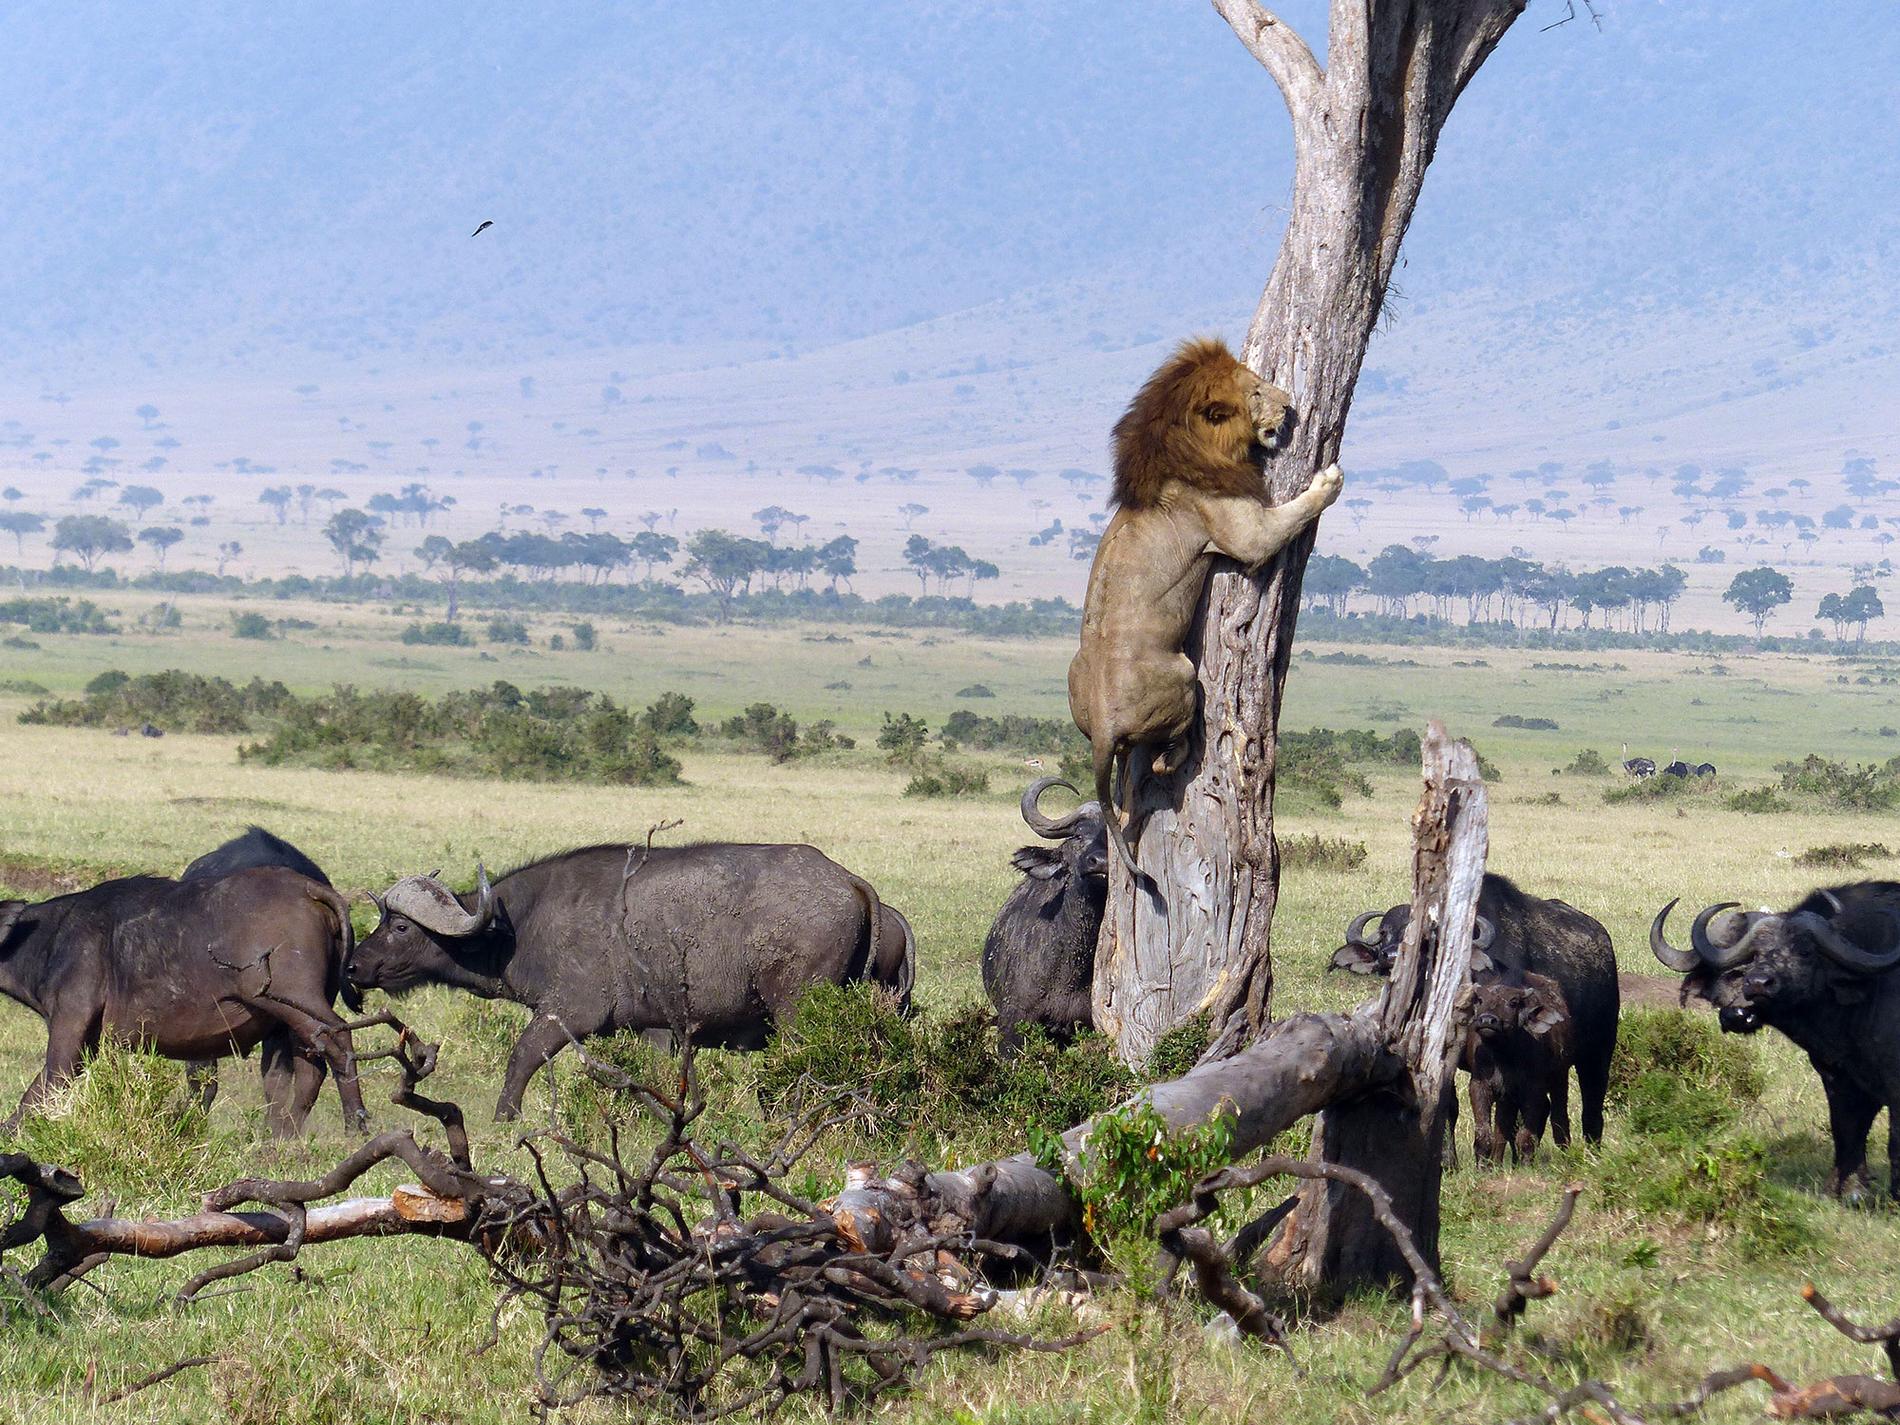 Lejonet har tagit sin tillflykt i trädet. Tittar man noga till höger på bilden syns kalven som bufflarna försökte skydda.